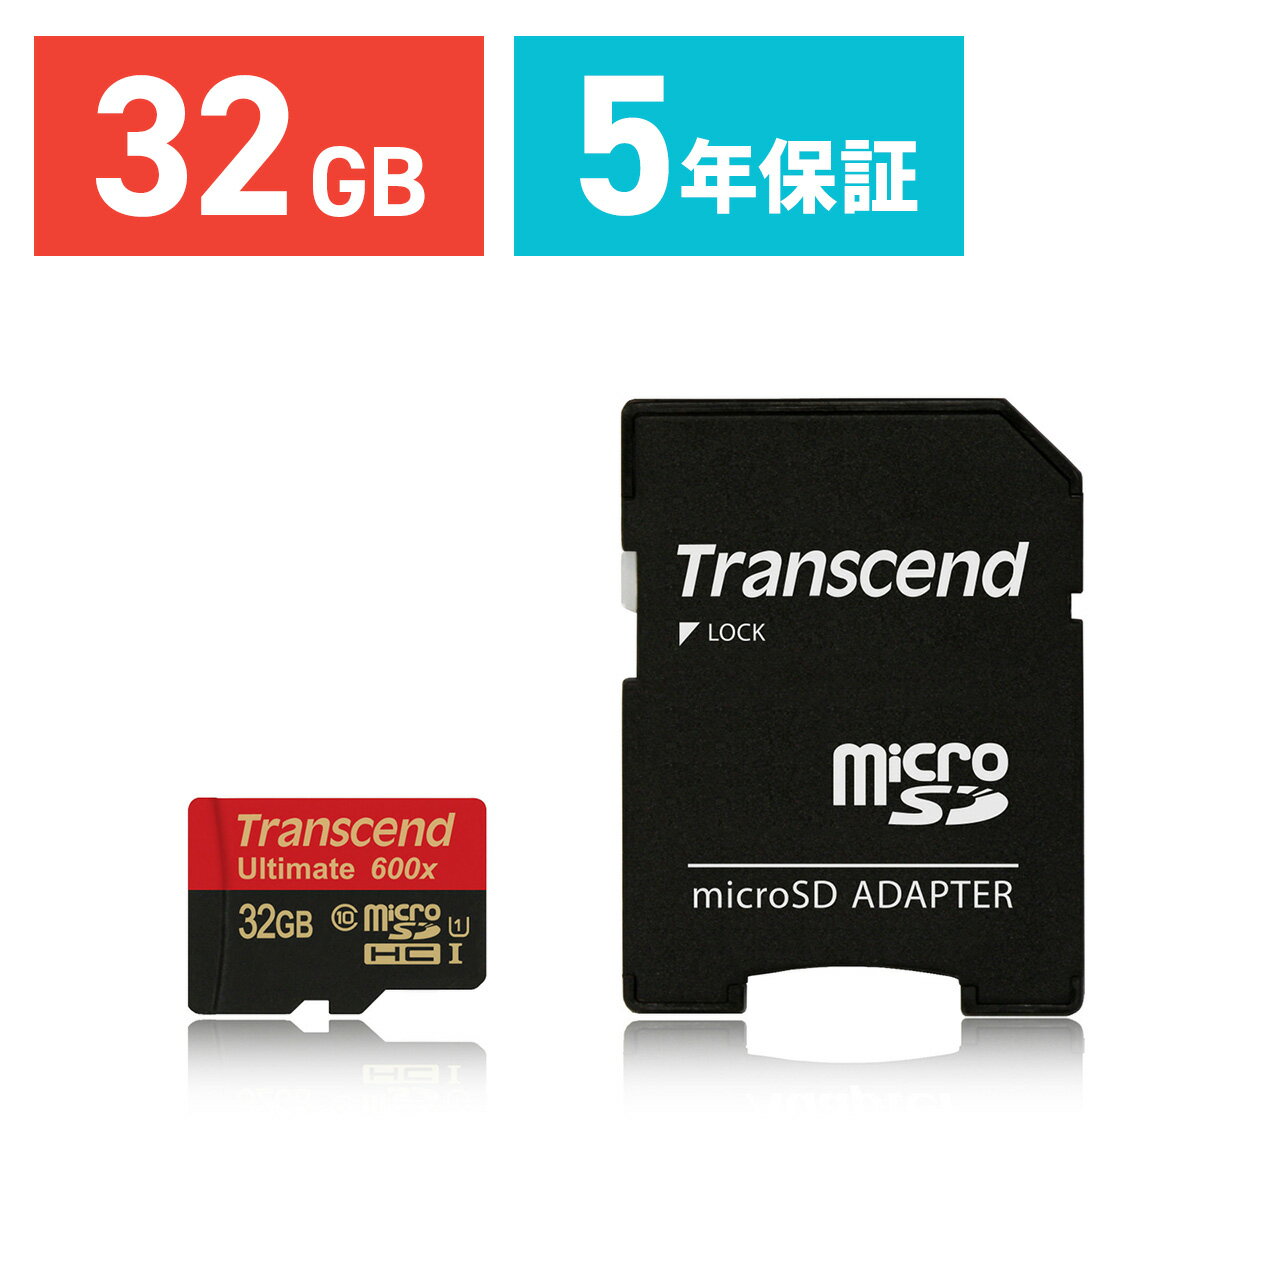 【送料無料】【ネコポス専用】 Transcend microSDカード 32GB Class10 UHS-I Ultimate 永久保証 マイクロSD microSDHC 最大転送速度90MB/s SDアダプタ付 New 3DS対応 クラス10 スマホ SD ［TS32GUSDHC10U1］